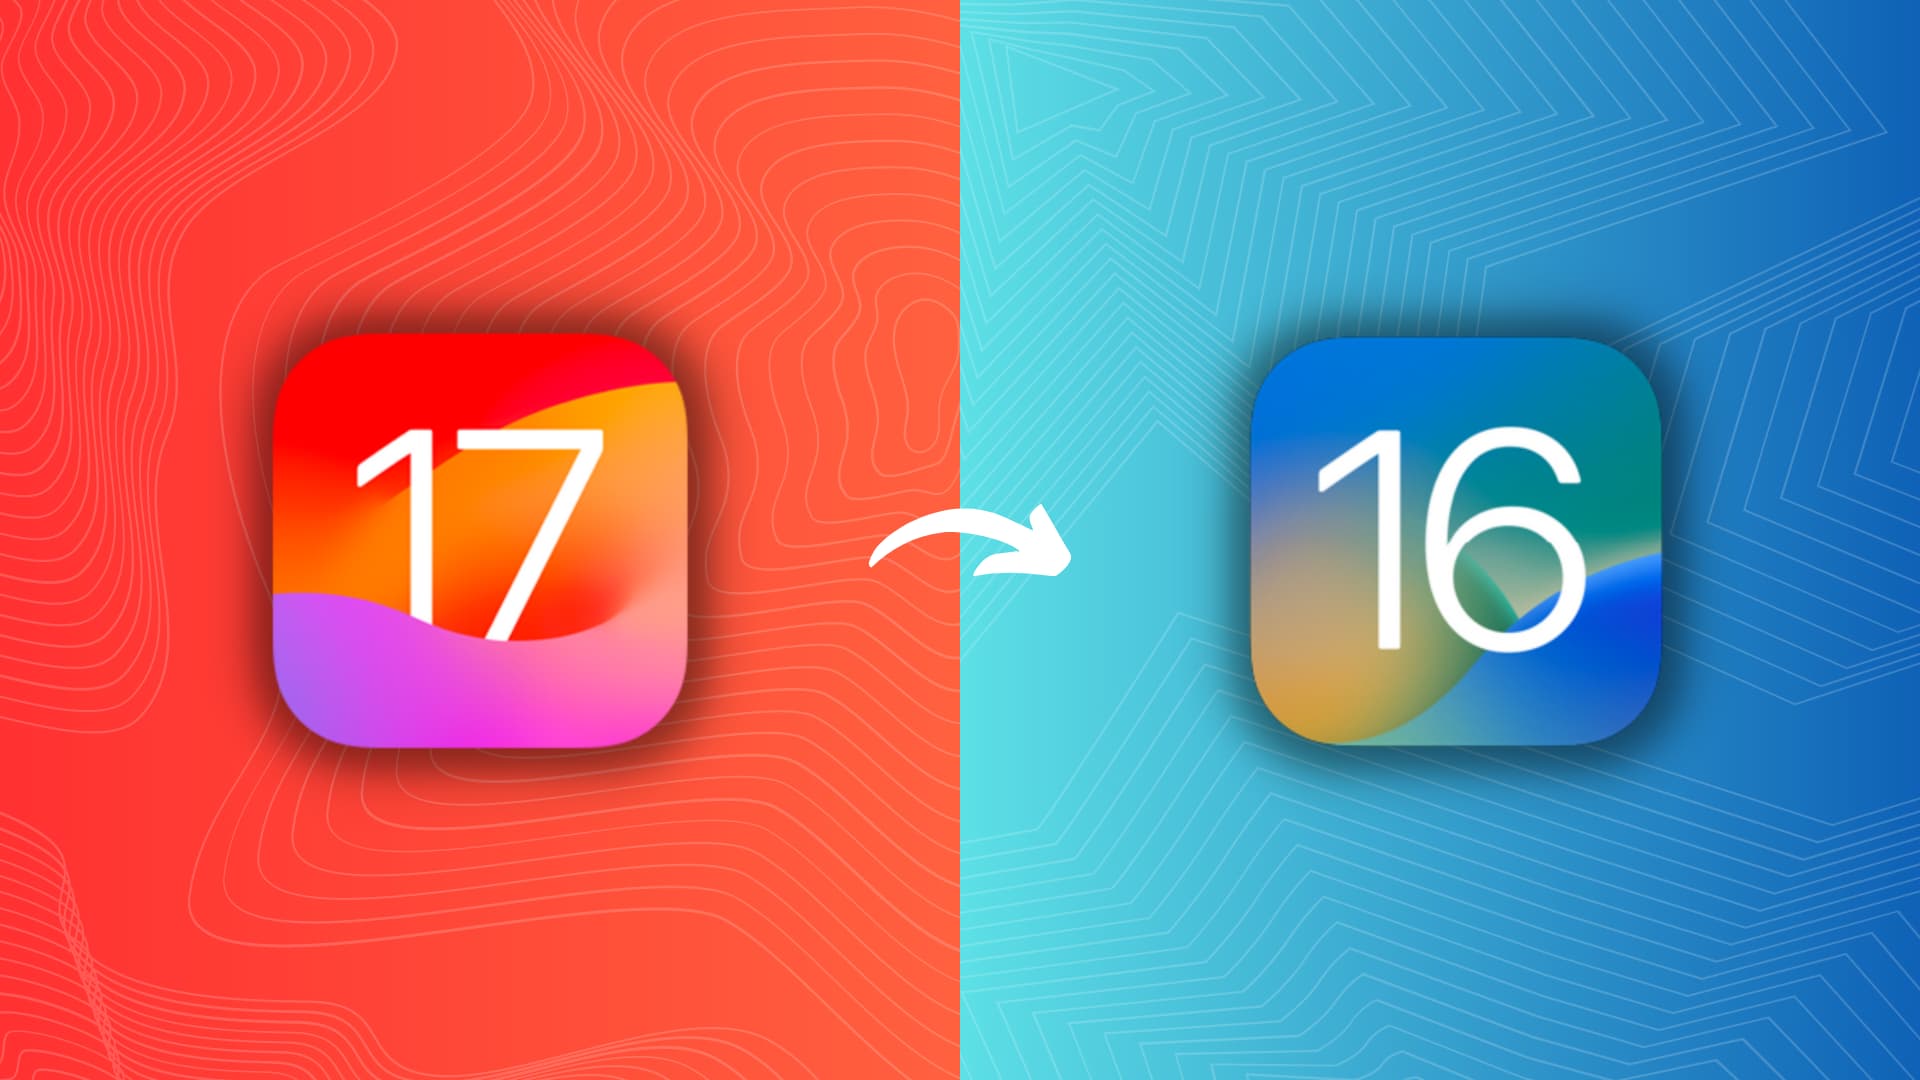 Пользователи медленнее переходят на iOS 17, чем на iOS 16 год назад